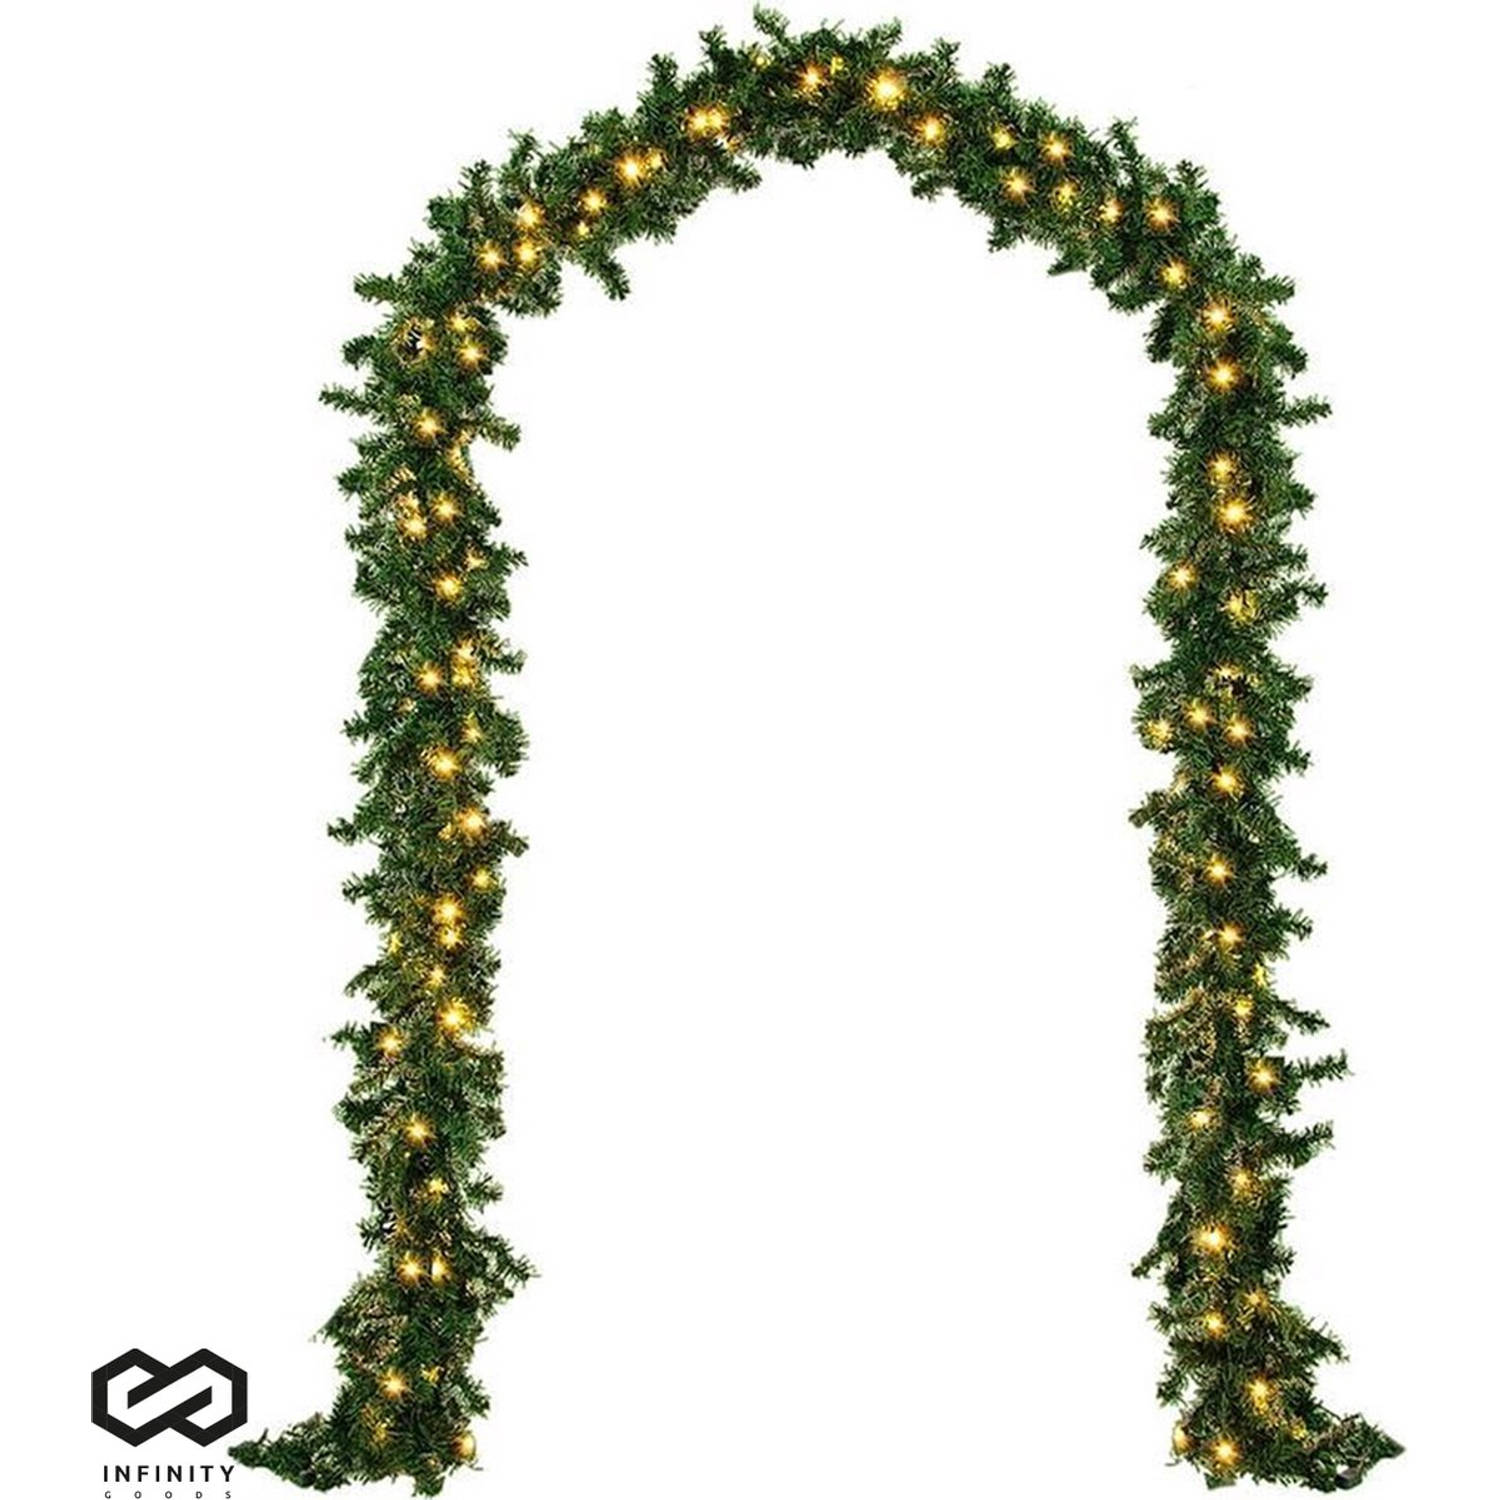 Infinity Goods Guirlande Met verlichting - Kerstversiering - 500CM - Kerstslinger - Kerstdecoratie - 100 LED - Groen